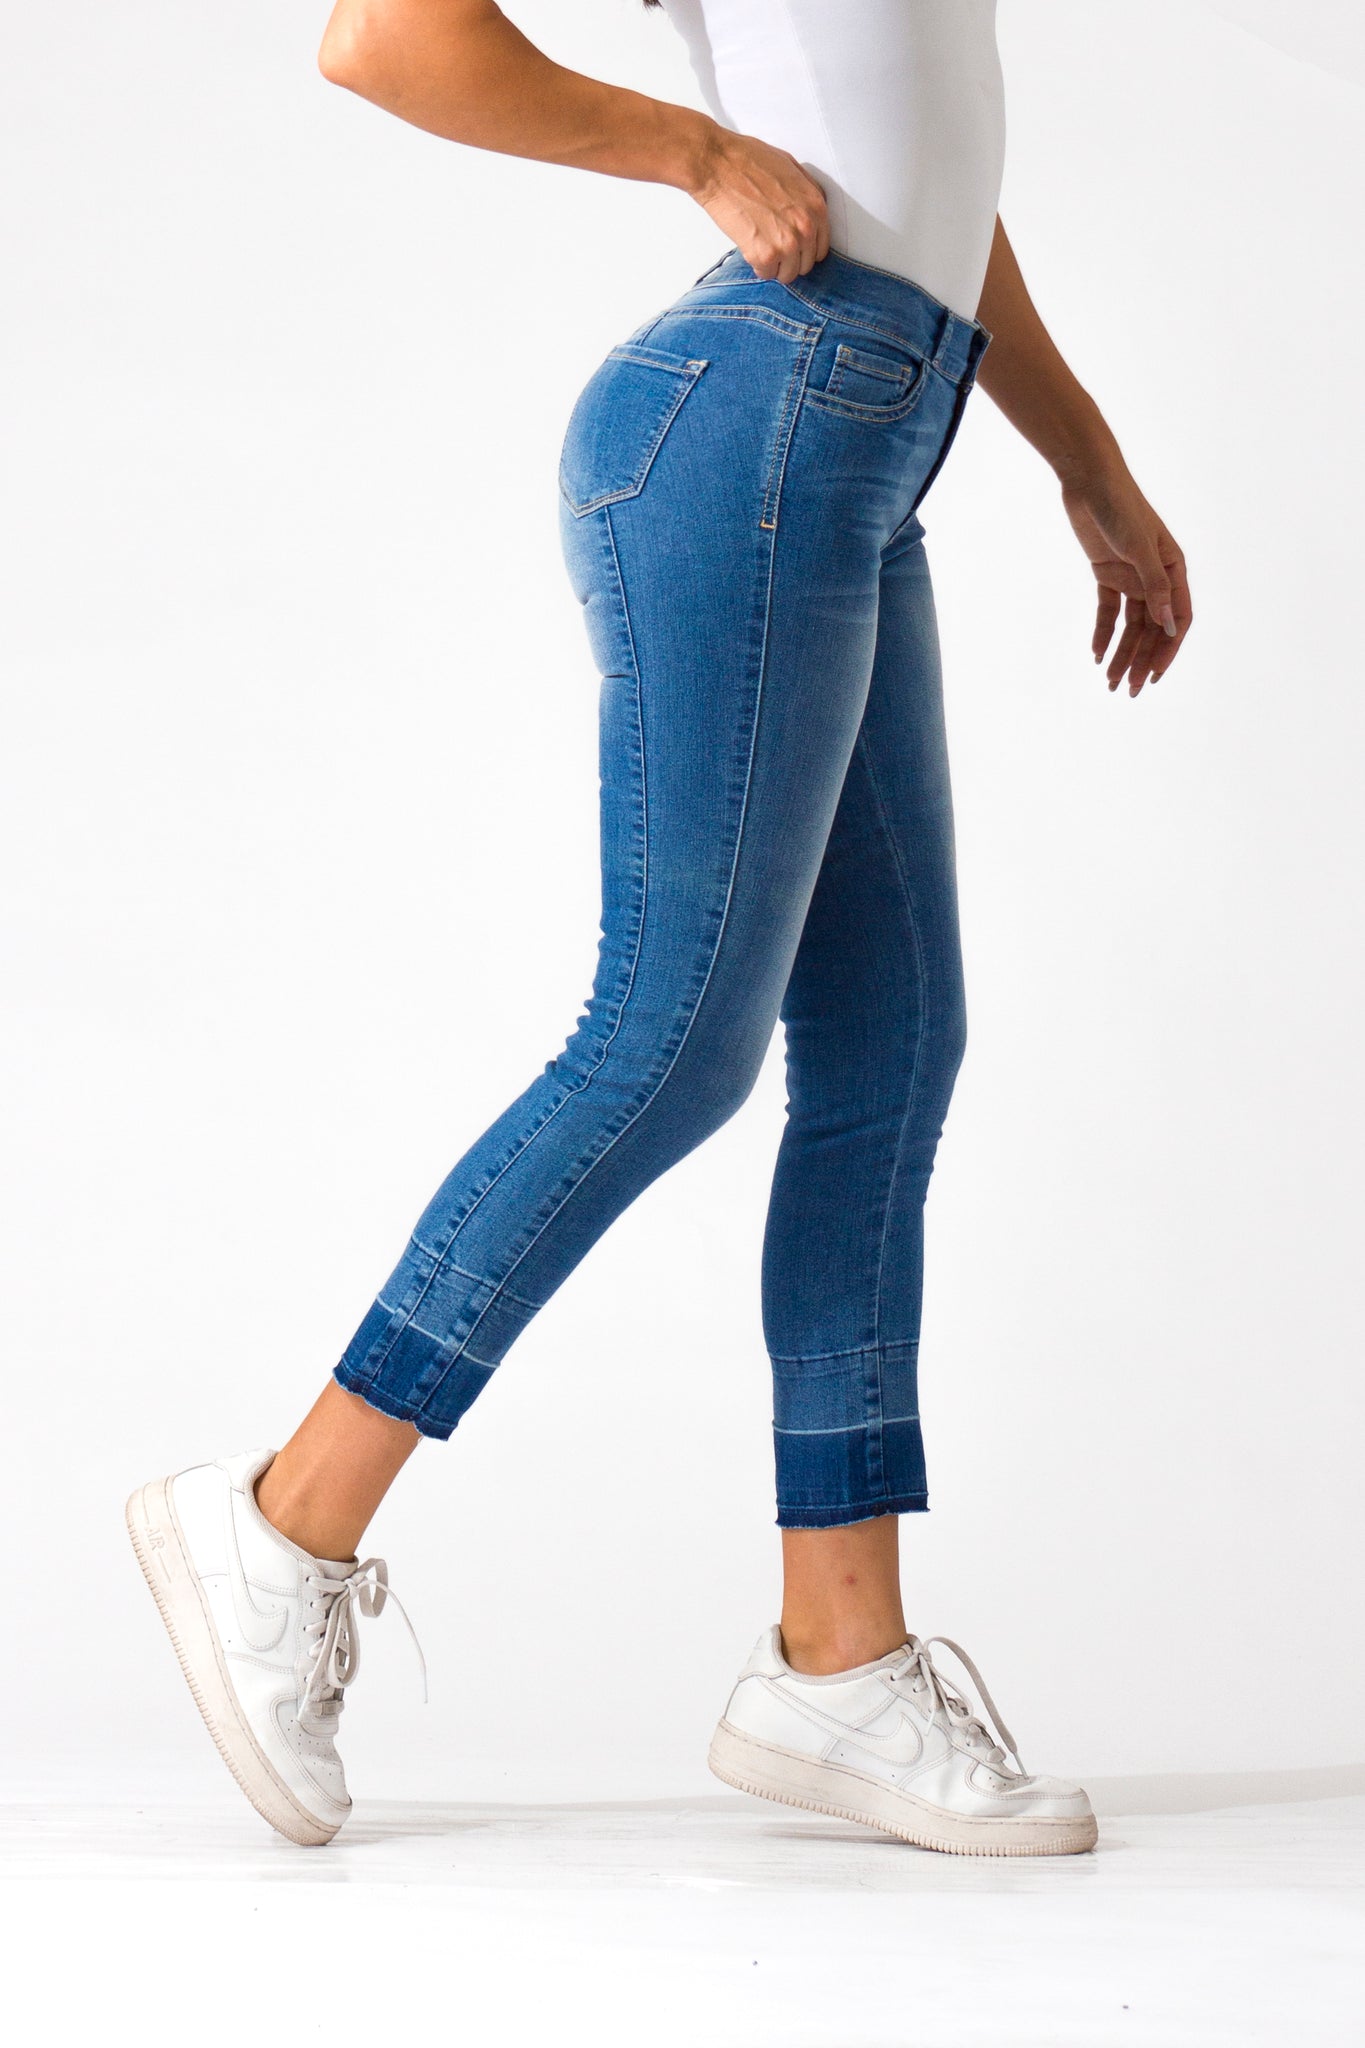 OHPOMP!® Cintura Media Skinny Ankle Jeans Azul Medio D845